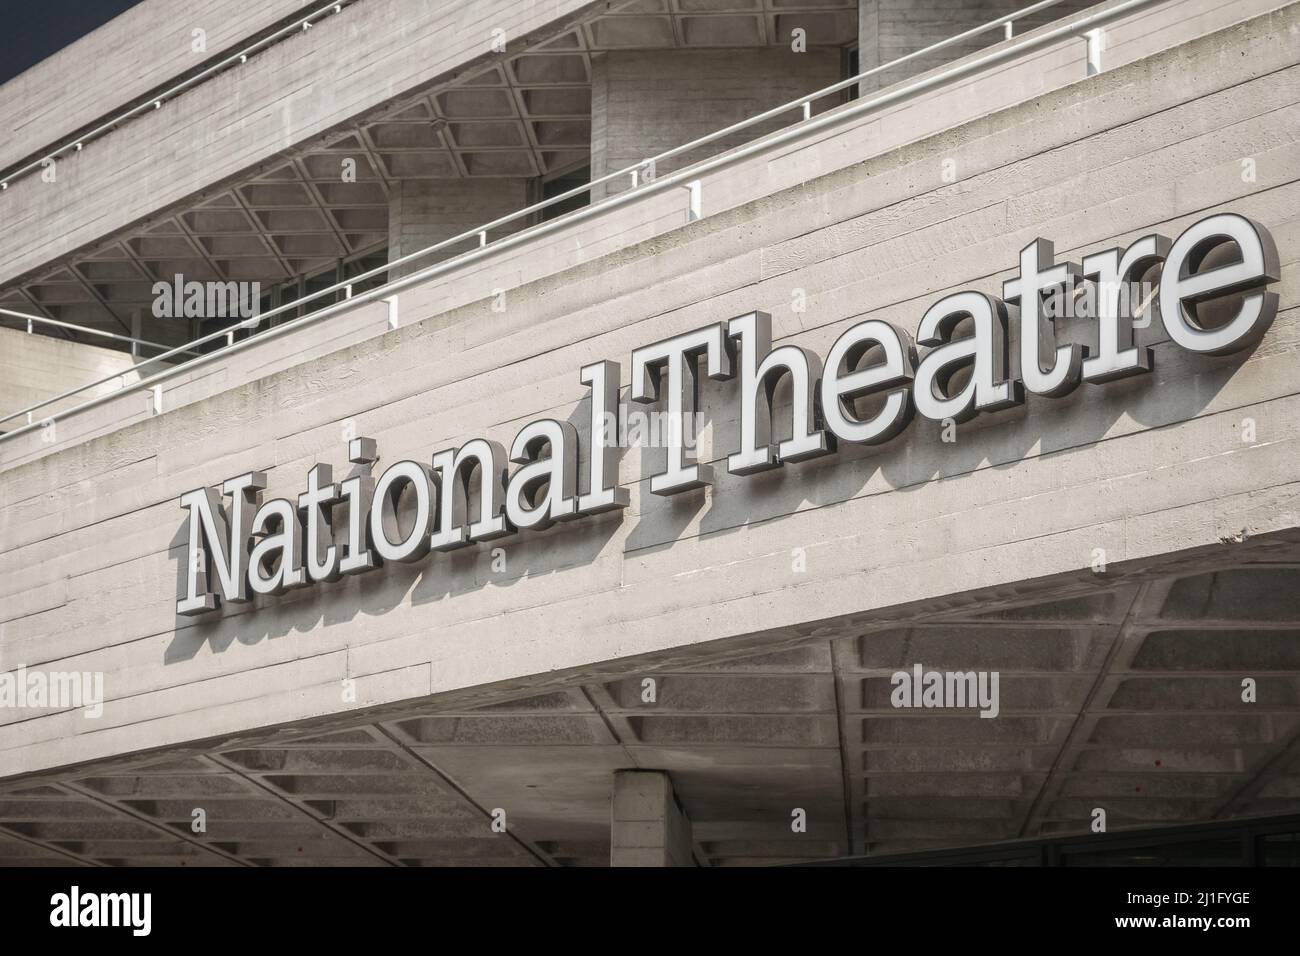 London, Großbritannien - 19. Juli 2021 - die Beschilderung und die brutalistische Architektur des Nationaltheaters im Stadtteil South Bank Stockfoto